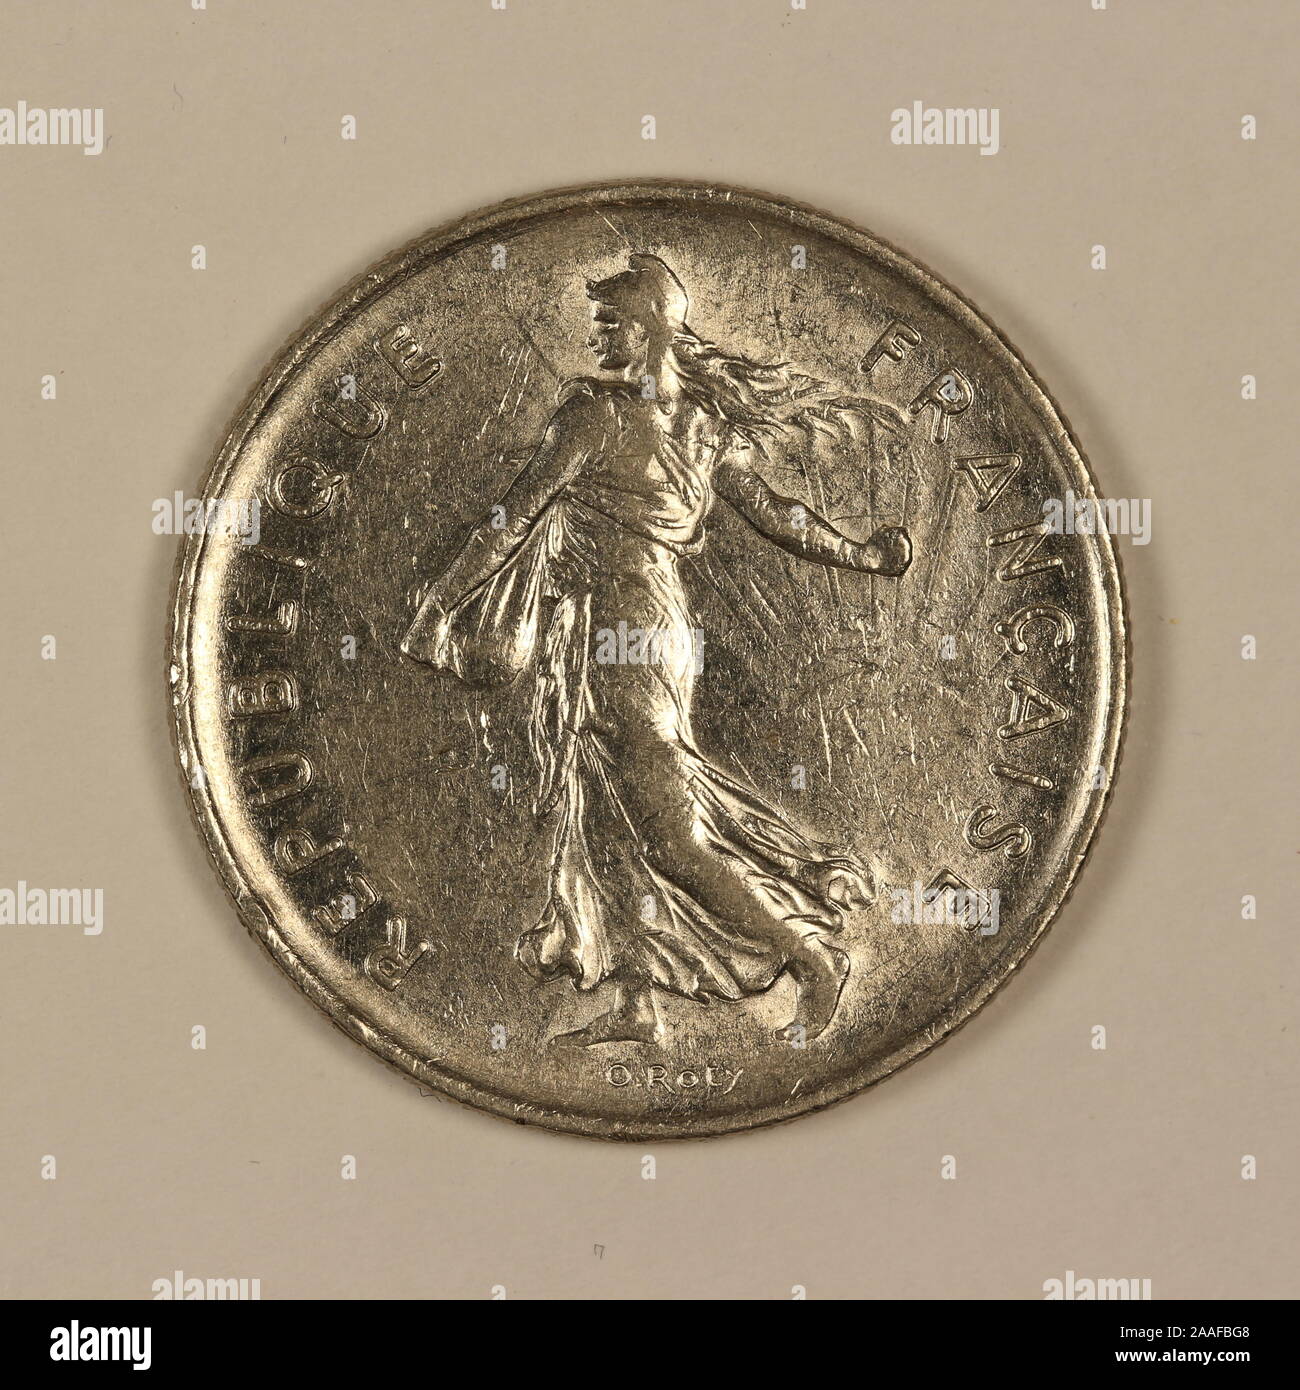 Rückseite einer ehemaligen Französischen 5 Francs-Münze Foto Stock